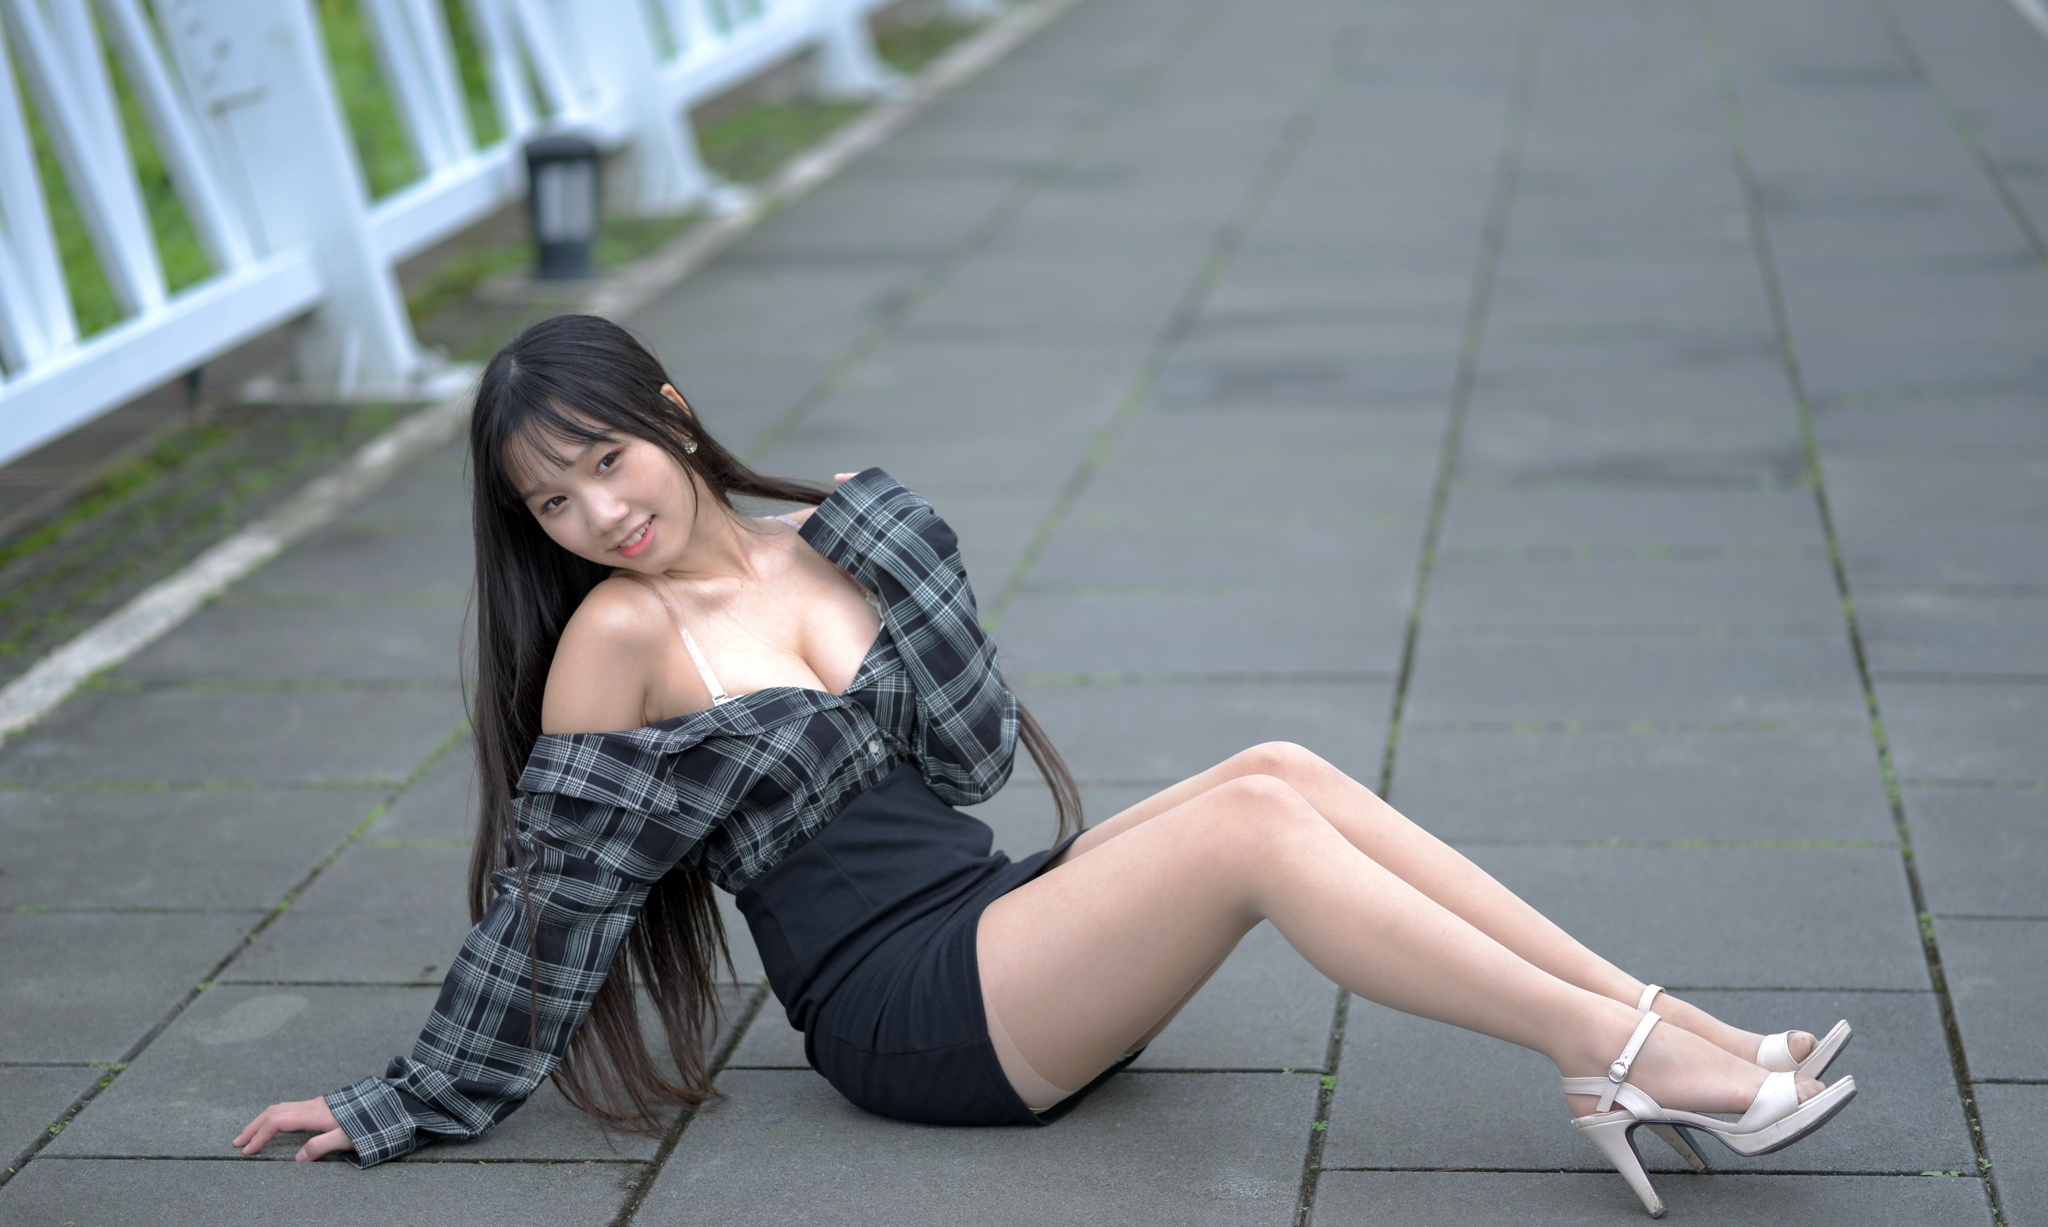 Asian Model Women Long Hair Dark Hair Sitting Depth Of Field White Heels Nylons Black Skirts Shirt E 2048x1227